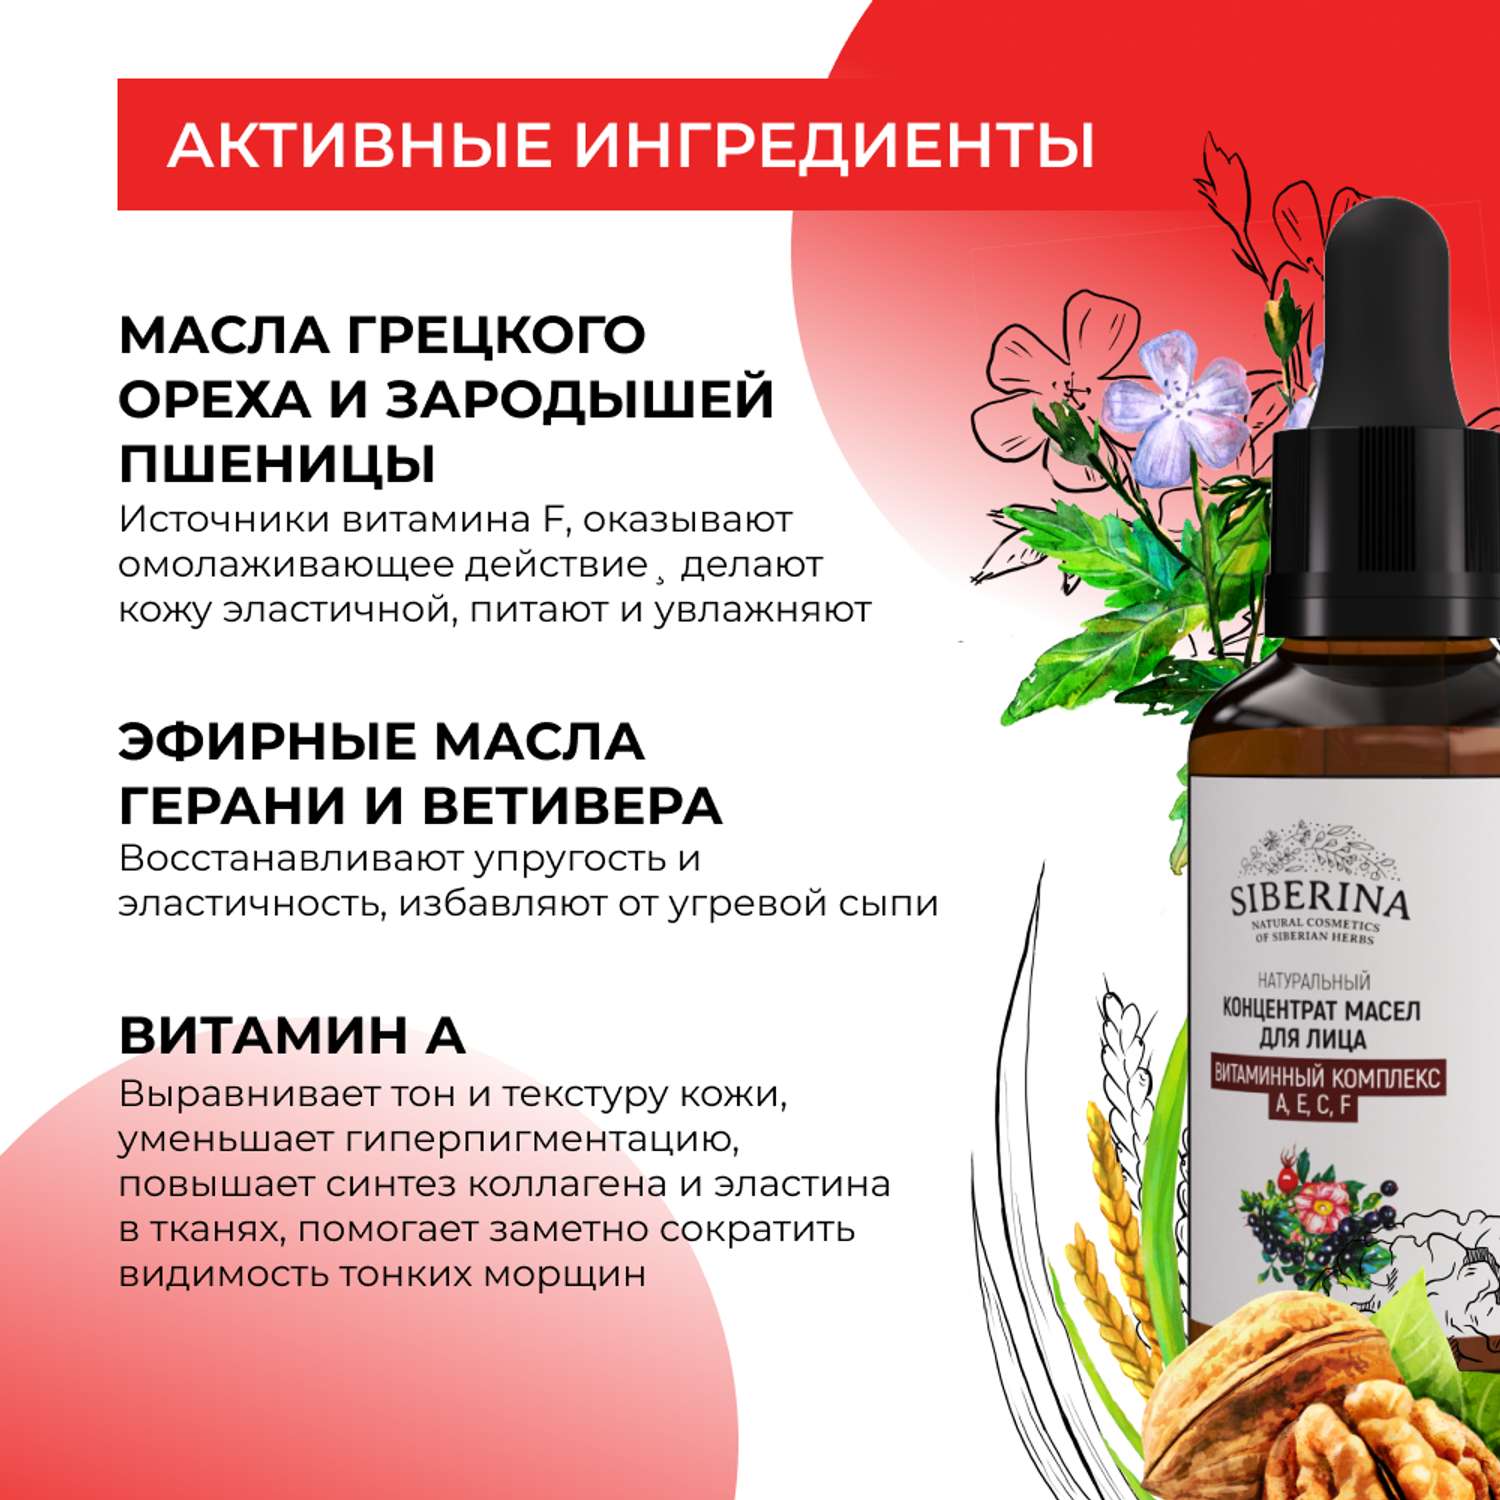 Концентрат масел Siberina натуральный «Витаминный комплекс А Е С F» для лица и волос 30 мл - фото 4